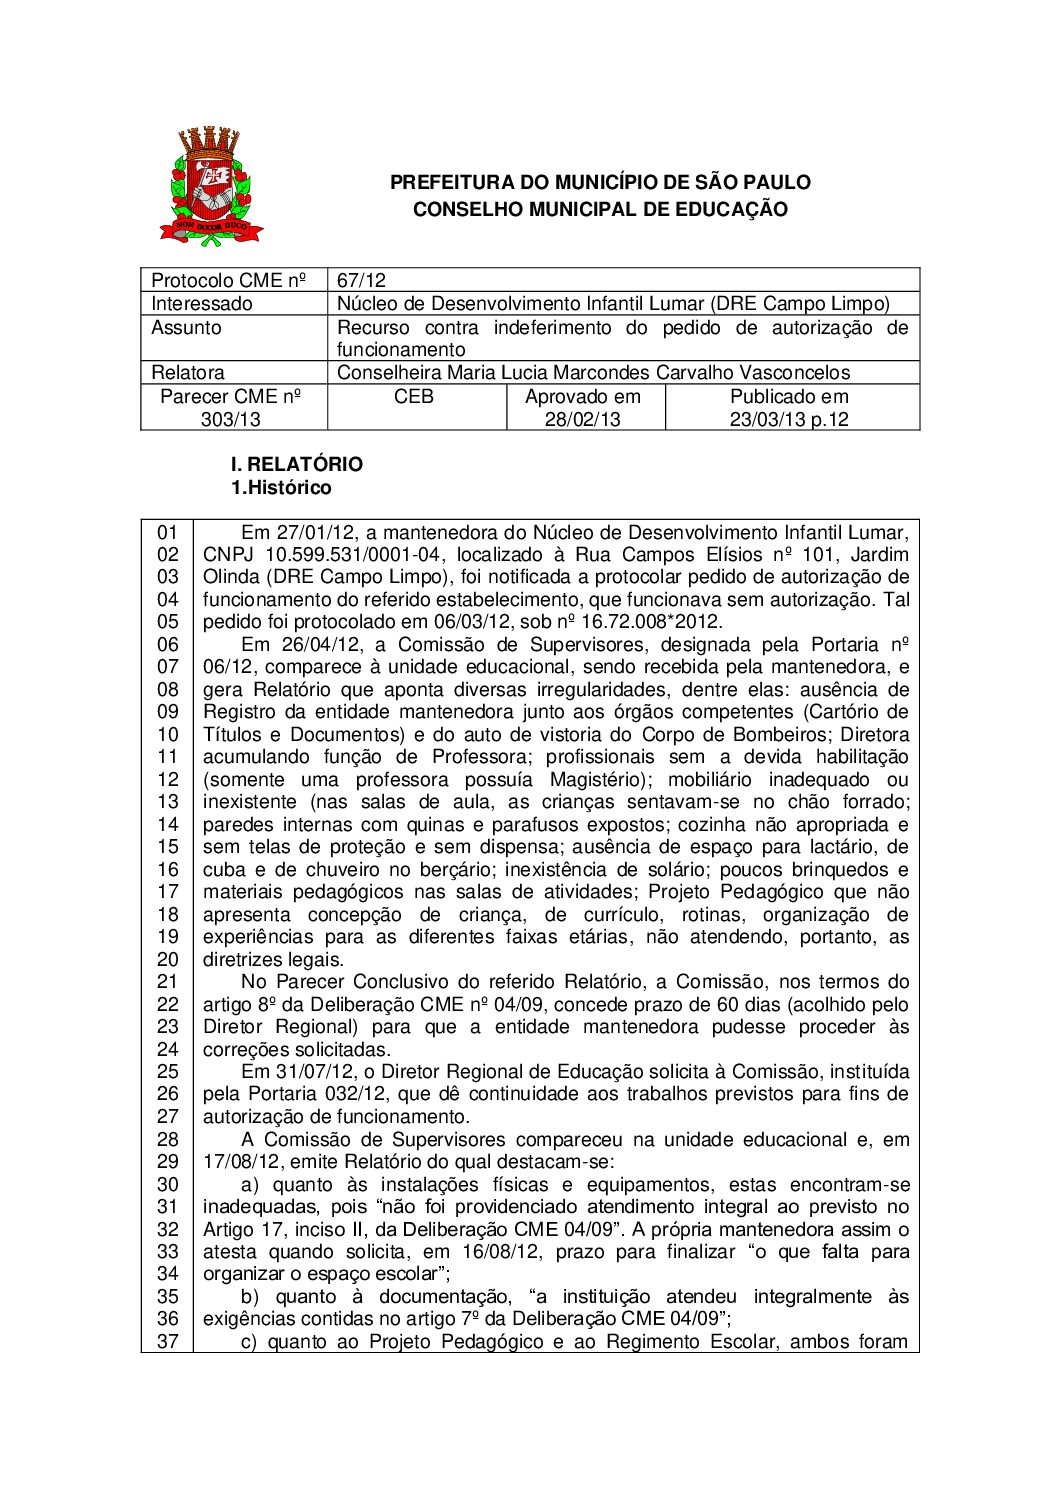 Parecer CME nº 303/2013 - Núcleo de Desenvolvimento Infantil Lumar (DRE Campo Limpo) - Recurso contra indeferimento do pedido de autorização de funcionamento 